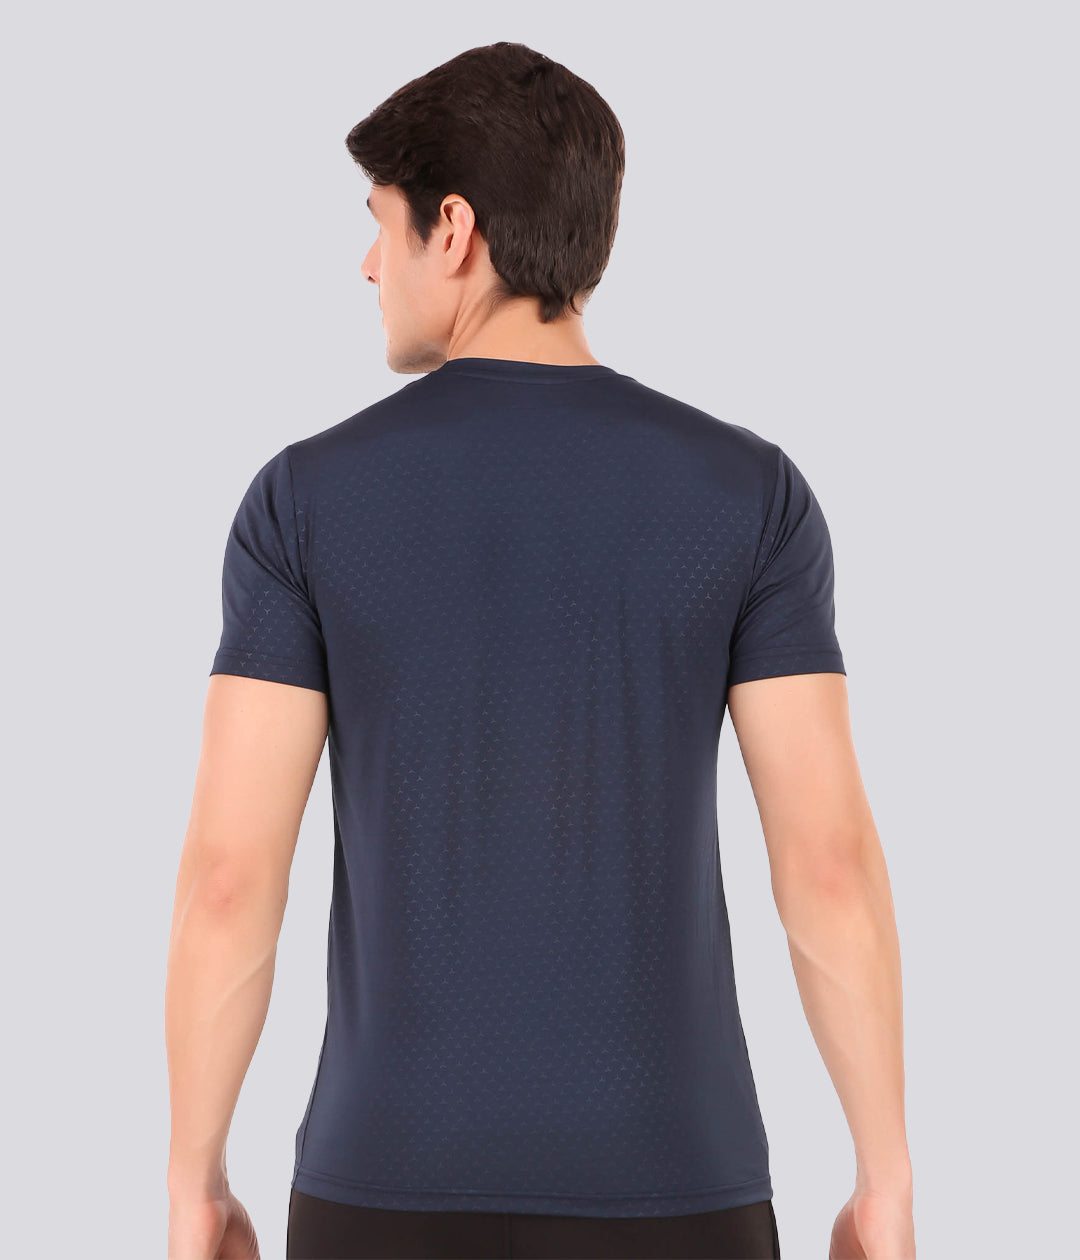 DRI-FIT T-shirt for Men (BLUE)